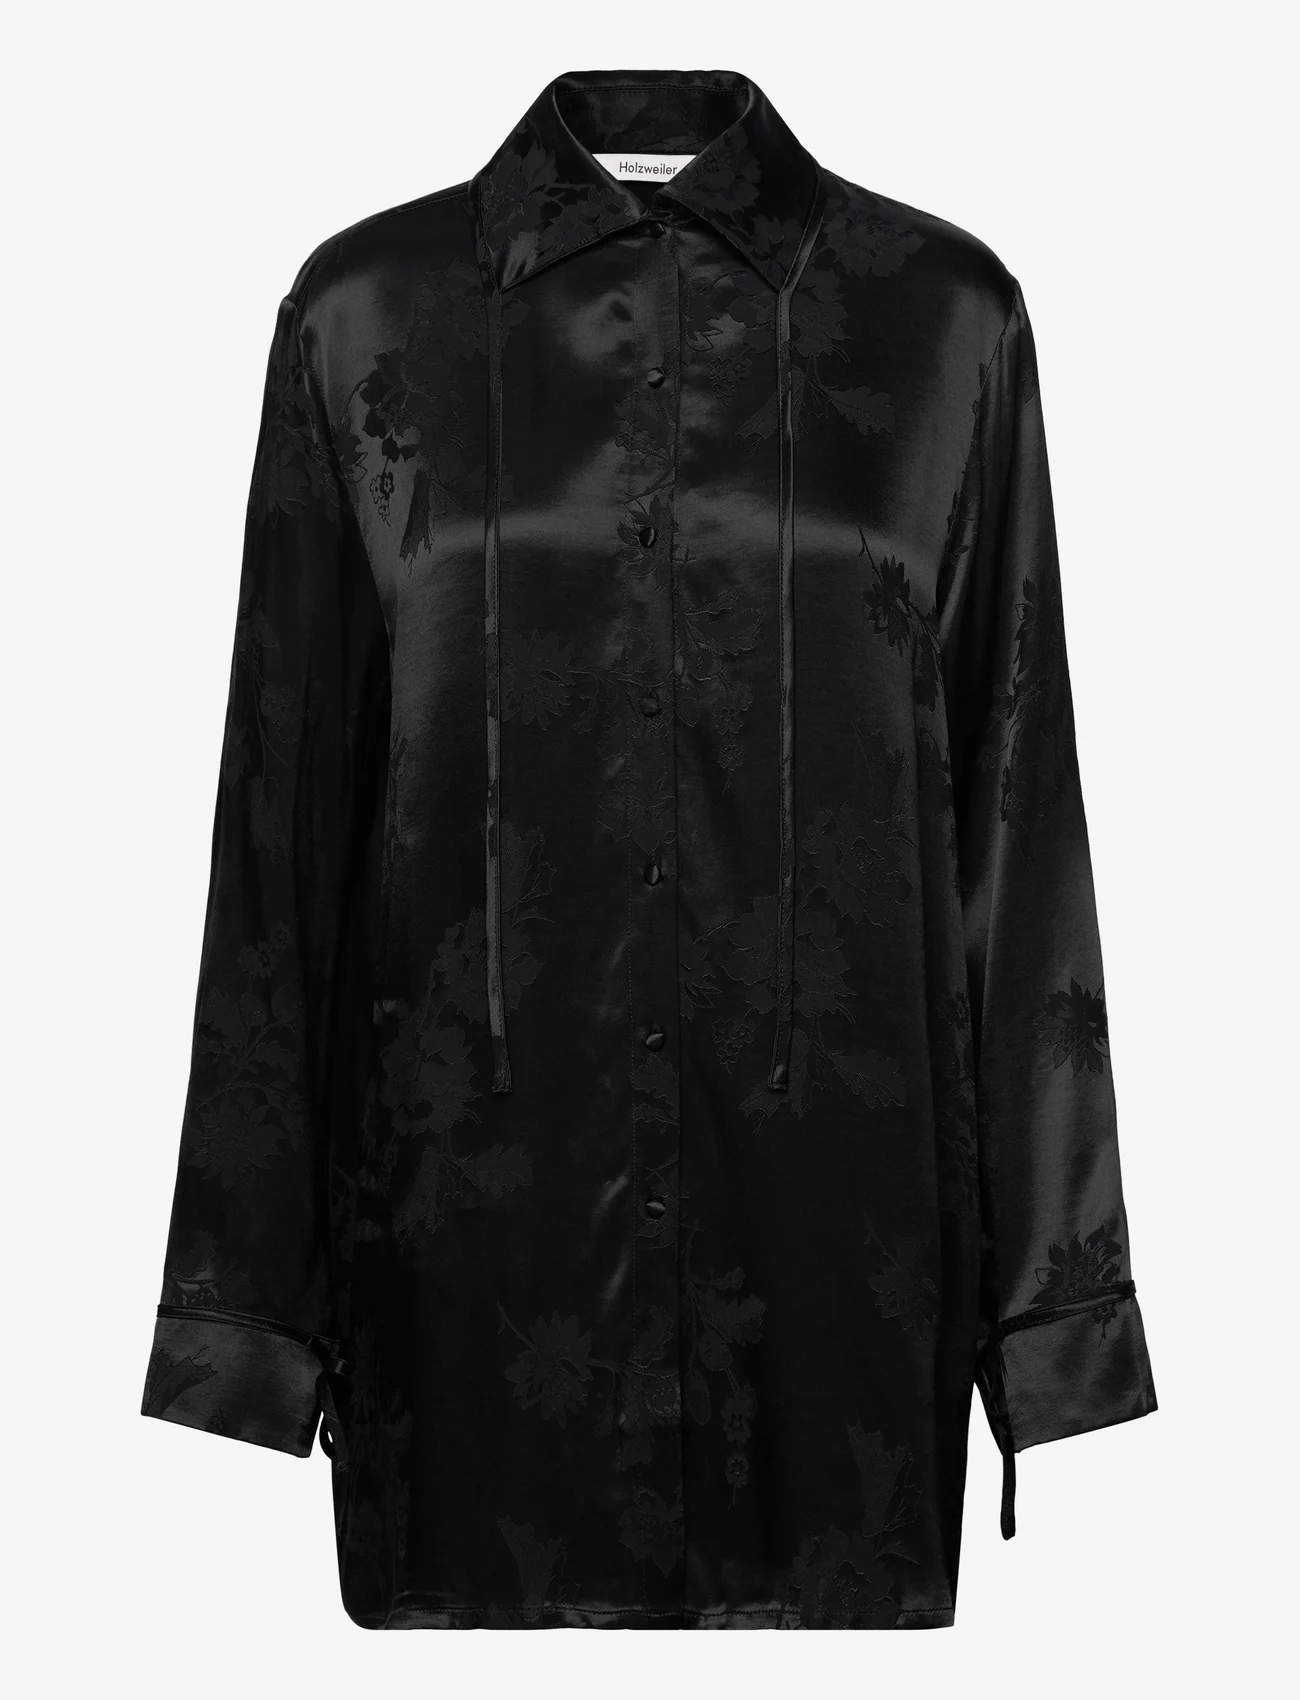 HOLZWEILER - Pom Jaquard Shirt - langermede skjorter - black - 0